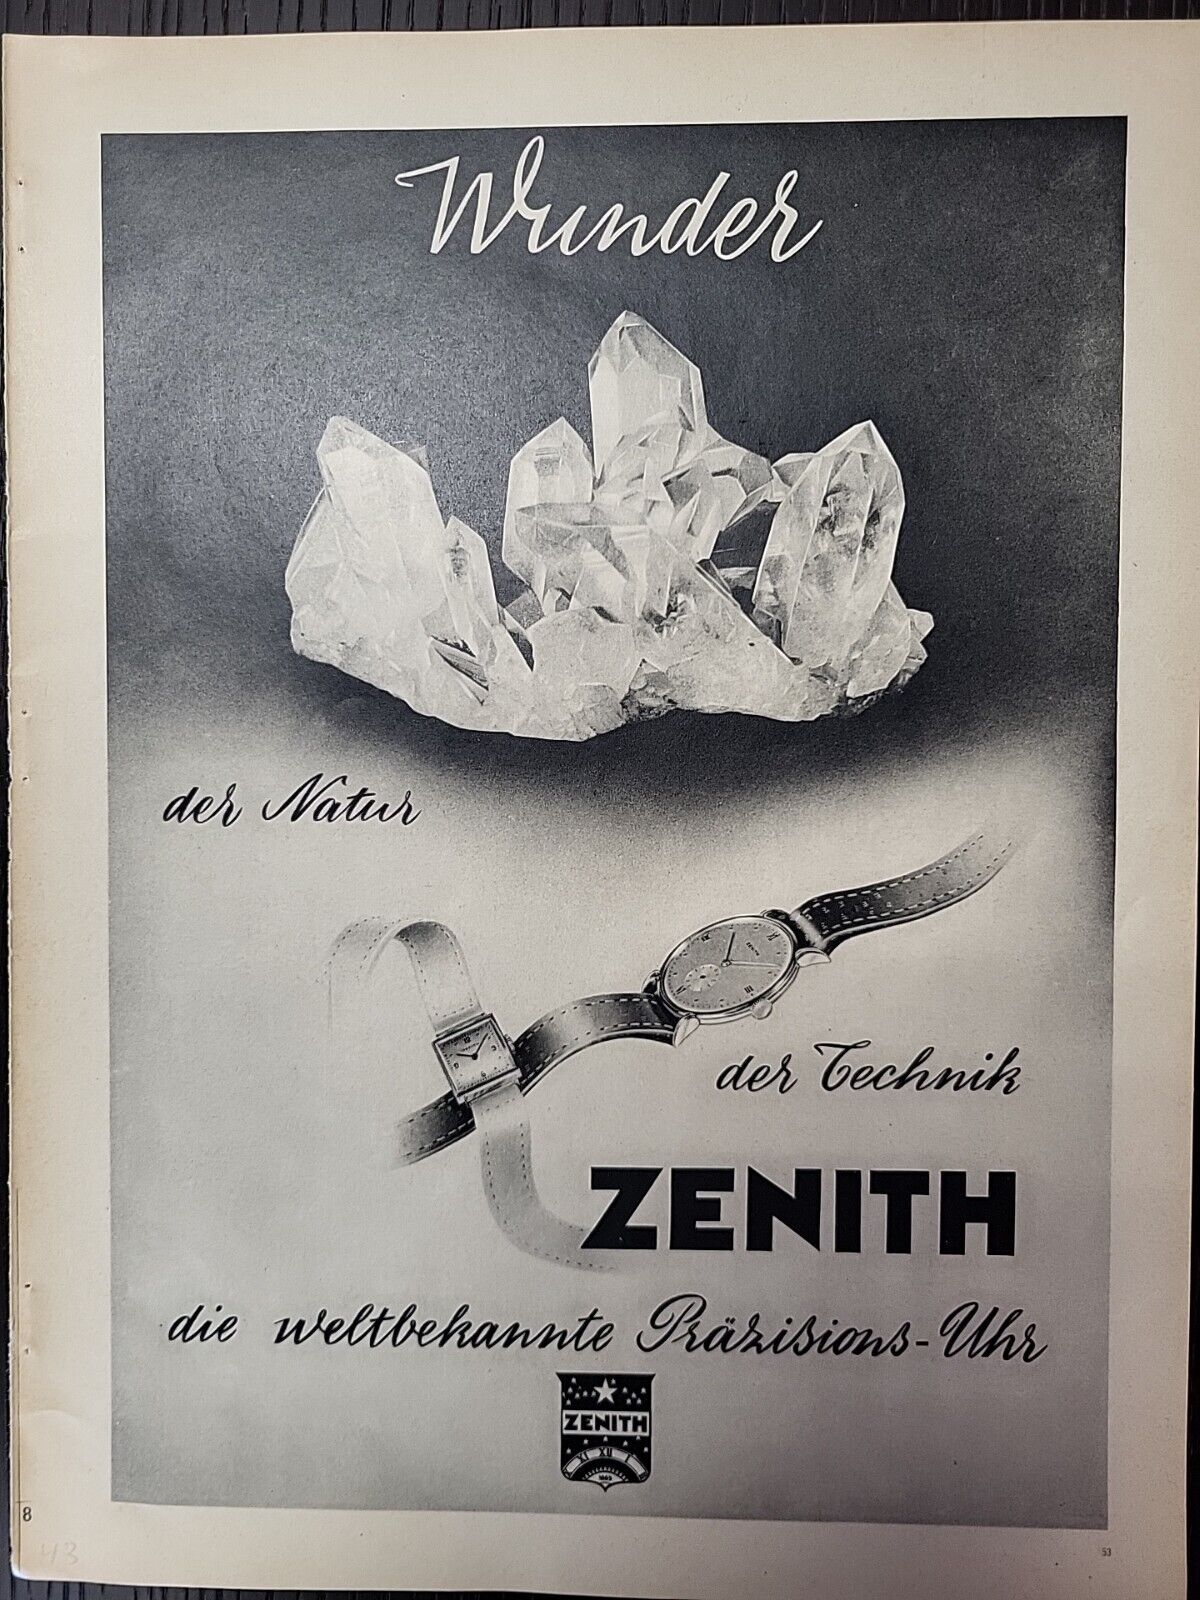 Zenith Swiss Watches 1943 Print Advertising Du World War 2 Luxury German WW2